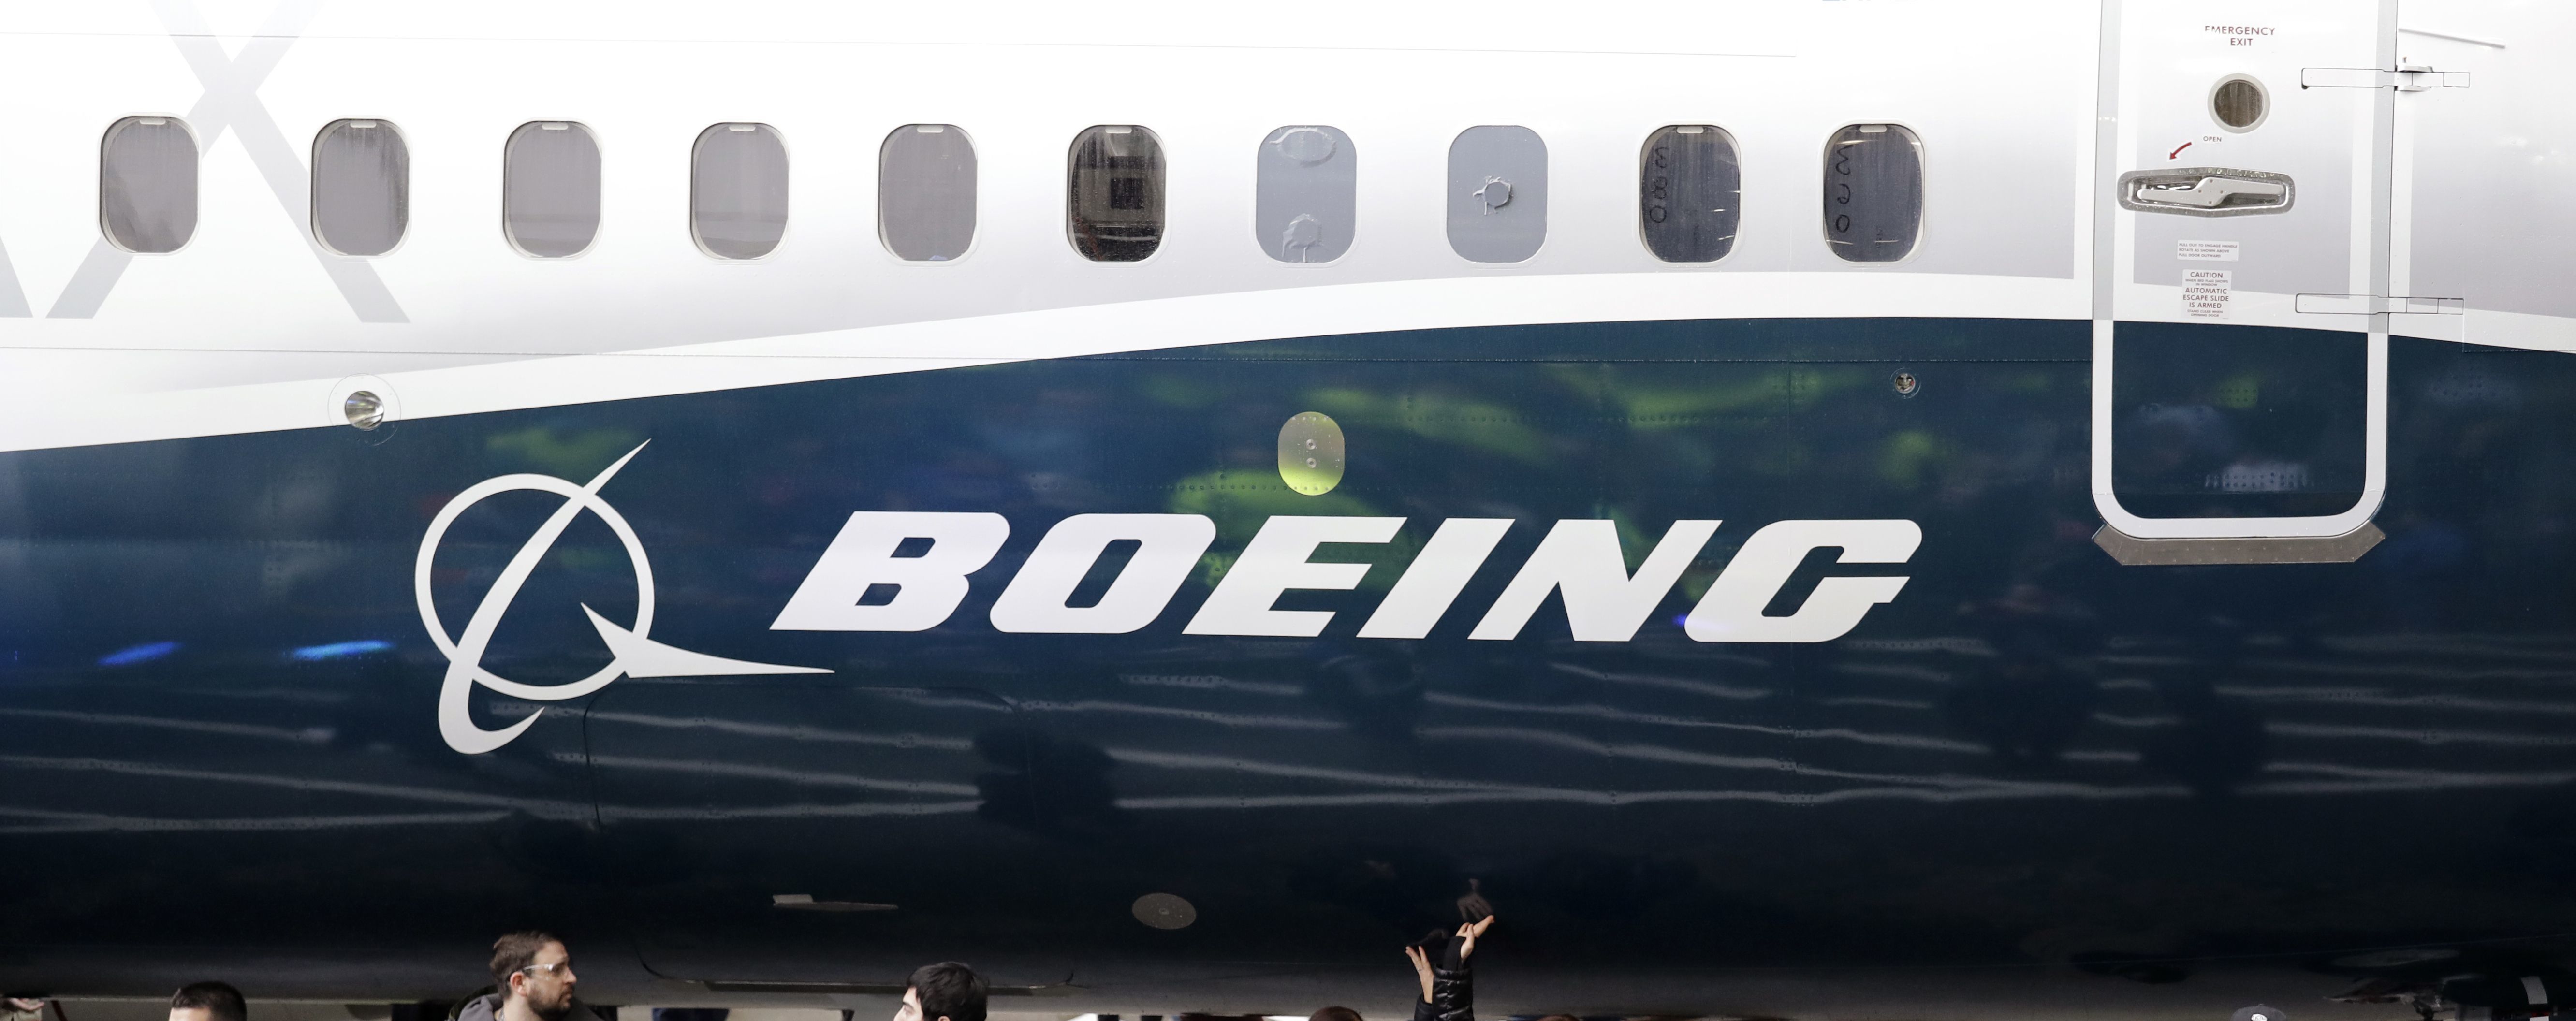 Boeing планує оновити прошивку для літака 737 Max до кінця березня